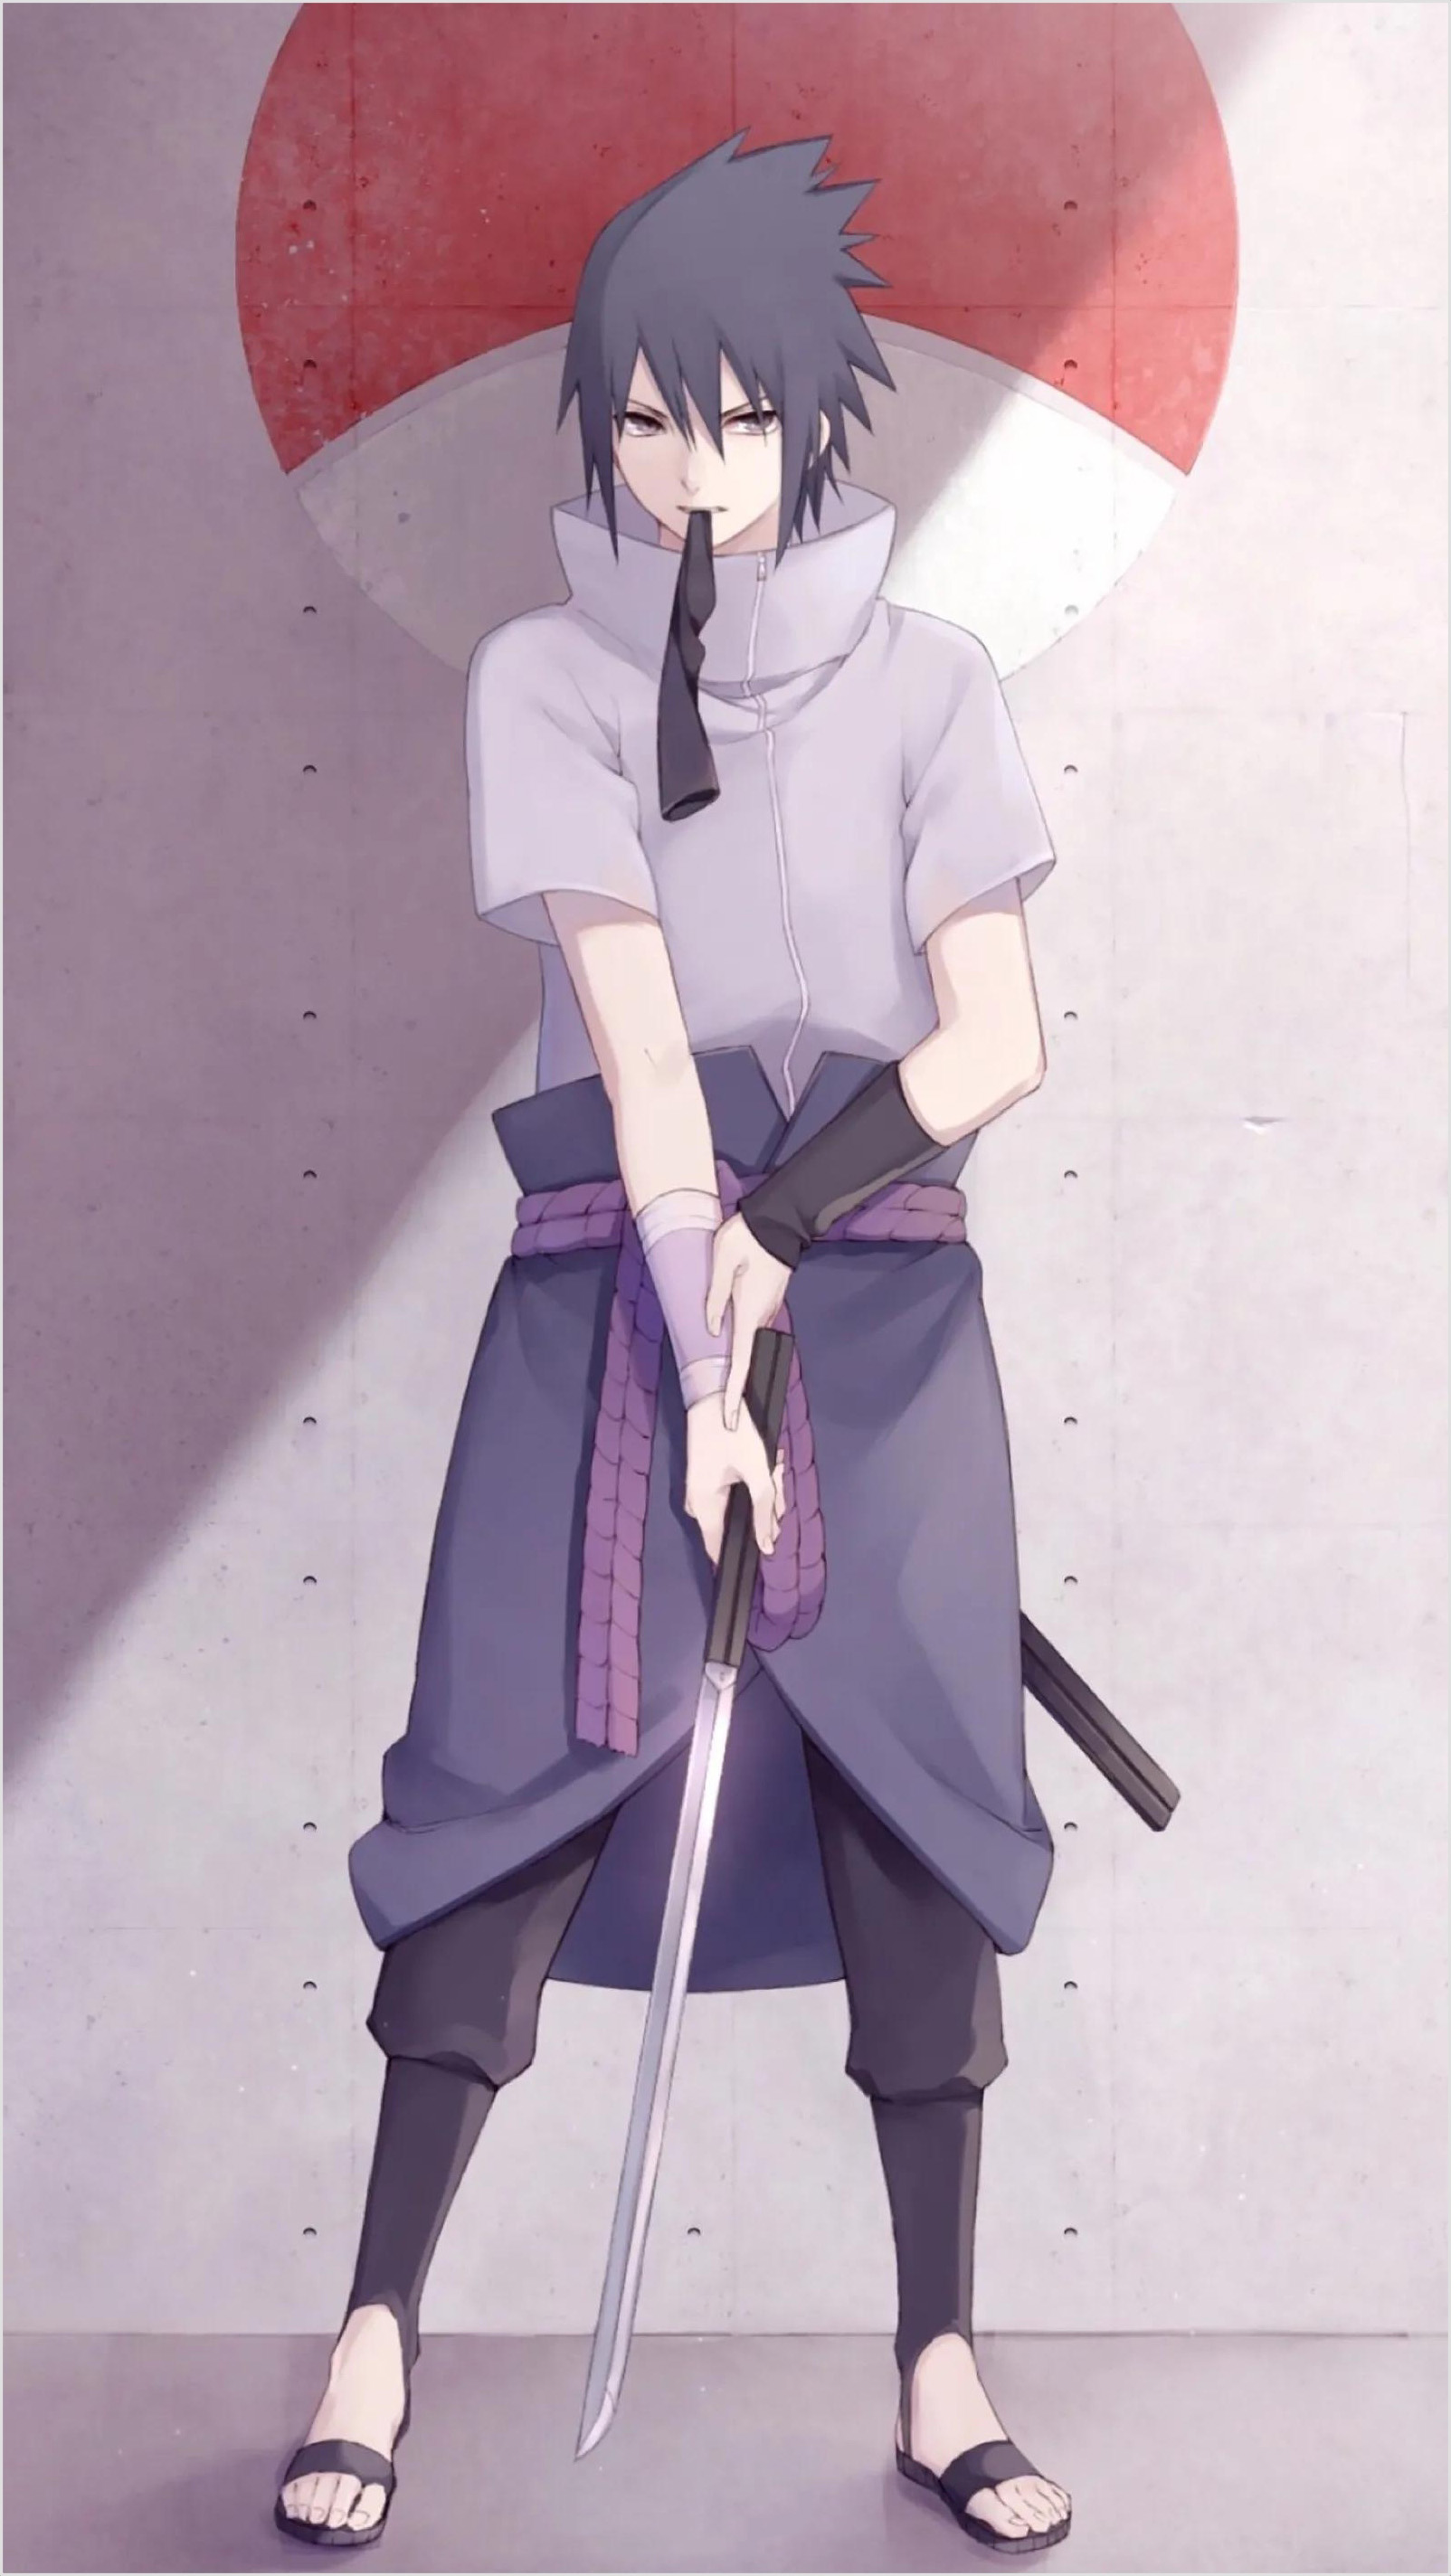 Ảnh Sasuke đẹp: Sasuke được ví như một trong những nhân vật nam đẹp trai nhất trong Anime Naruto. Bạn không muốn bỏ lỡ cơ hội để xem ảnh của anh chàng này đúng không? Tất cả sự quyến rũ và lợi hại của Sasuke đều được tái hiện đầy đủ trong hình ảnh này.